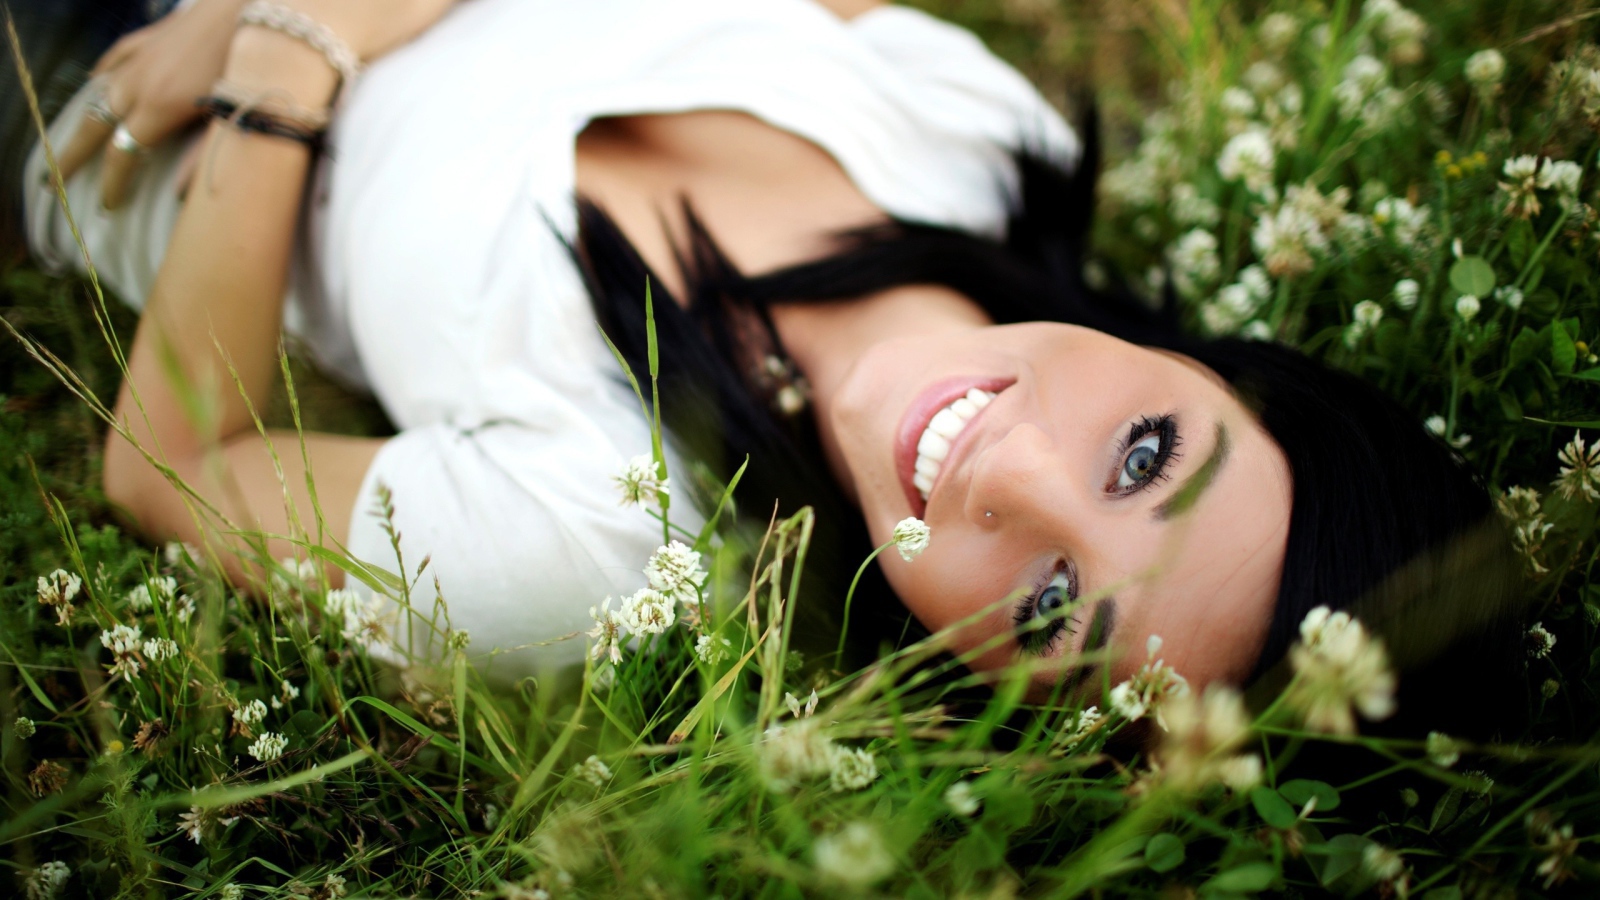 Девушка брюнетка с пирсингом в носу лежит в траве